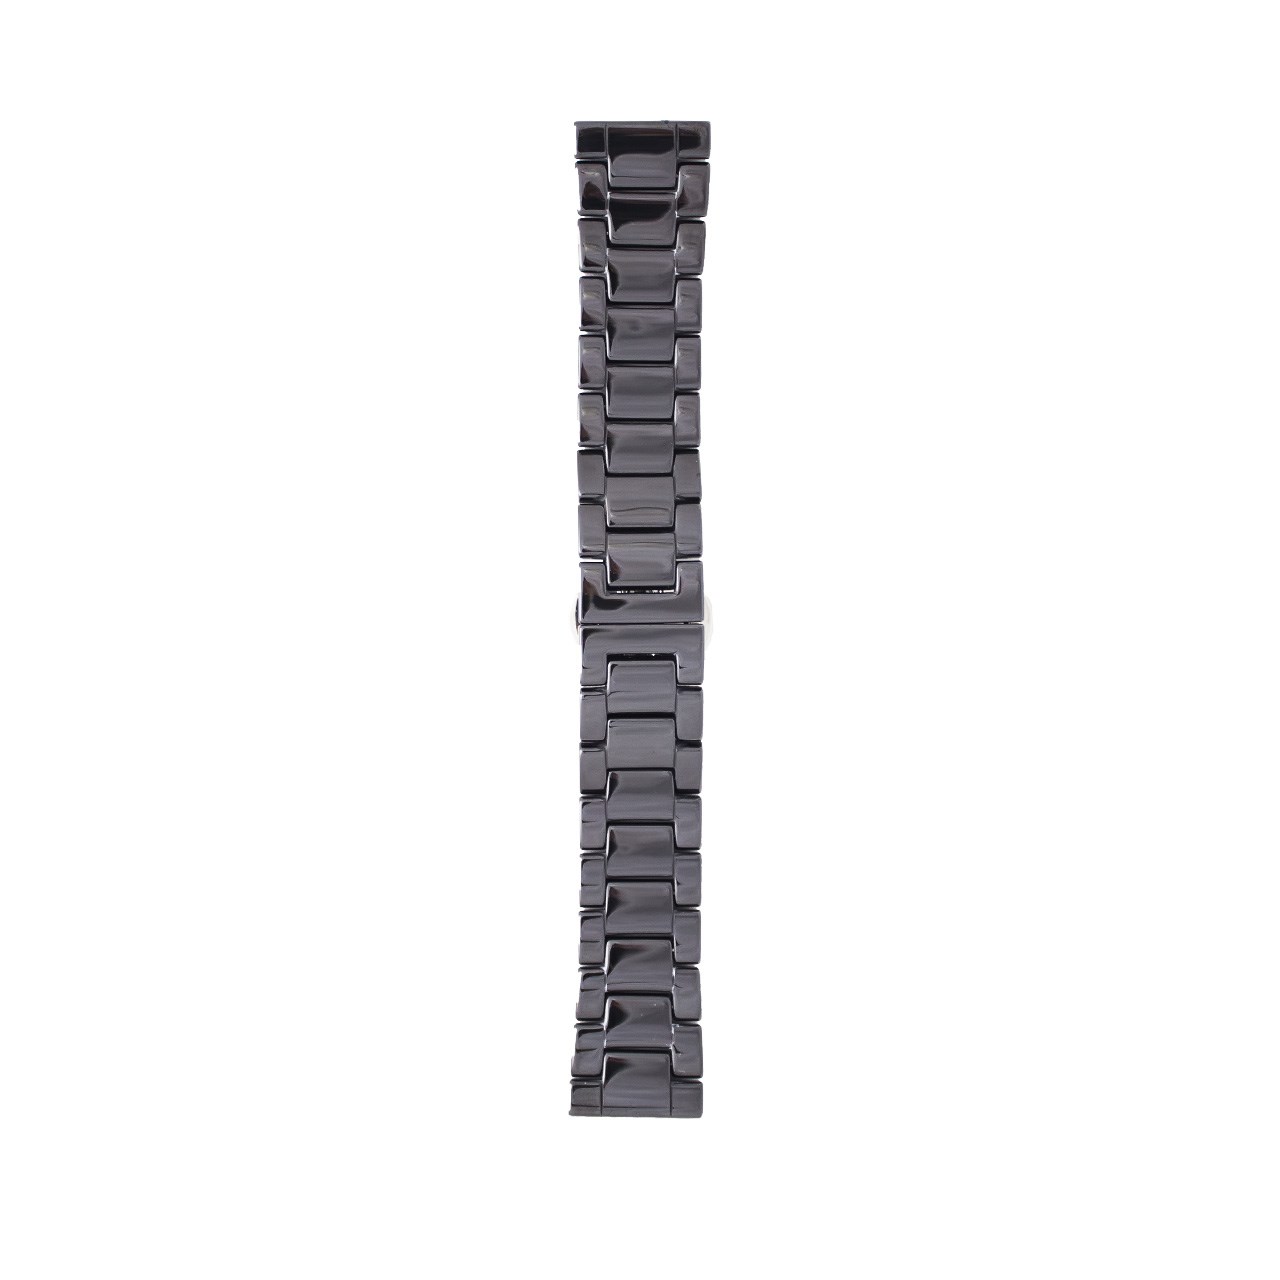 بند استیل ساعت هوشمند مدل Ceramics Band مناسب برای Gear S3